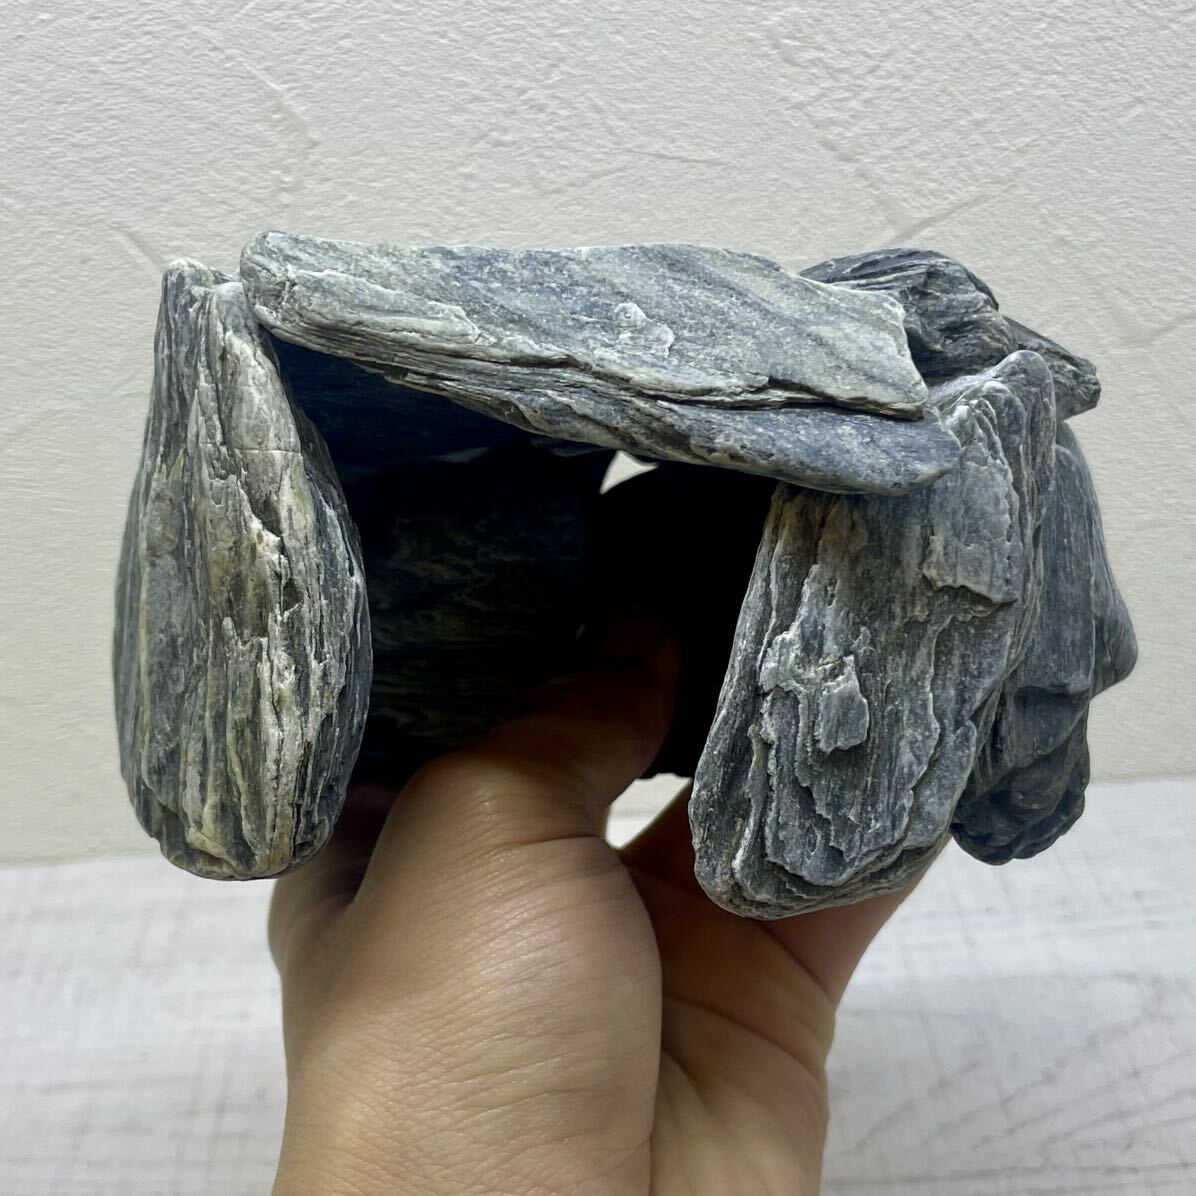 爬虫類 昆虫 熱帯魚 アクアリウム シェルター 自然石 天然石 ハンドメイド オリジナル 手作り 一点物